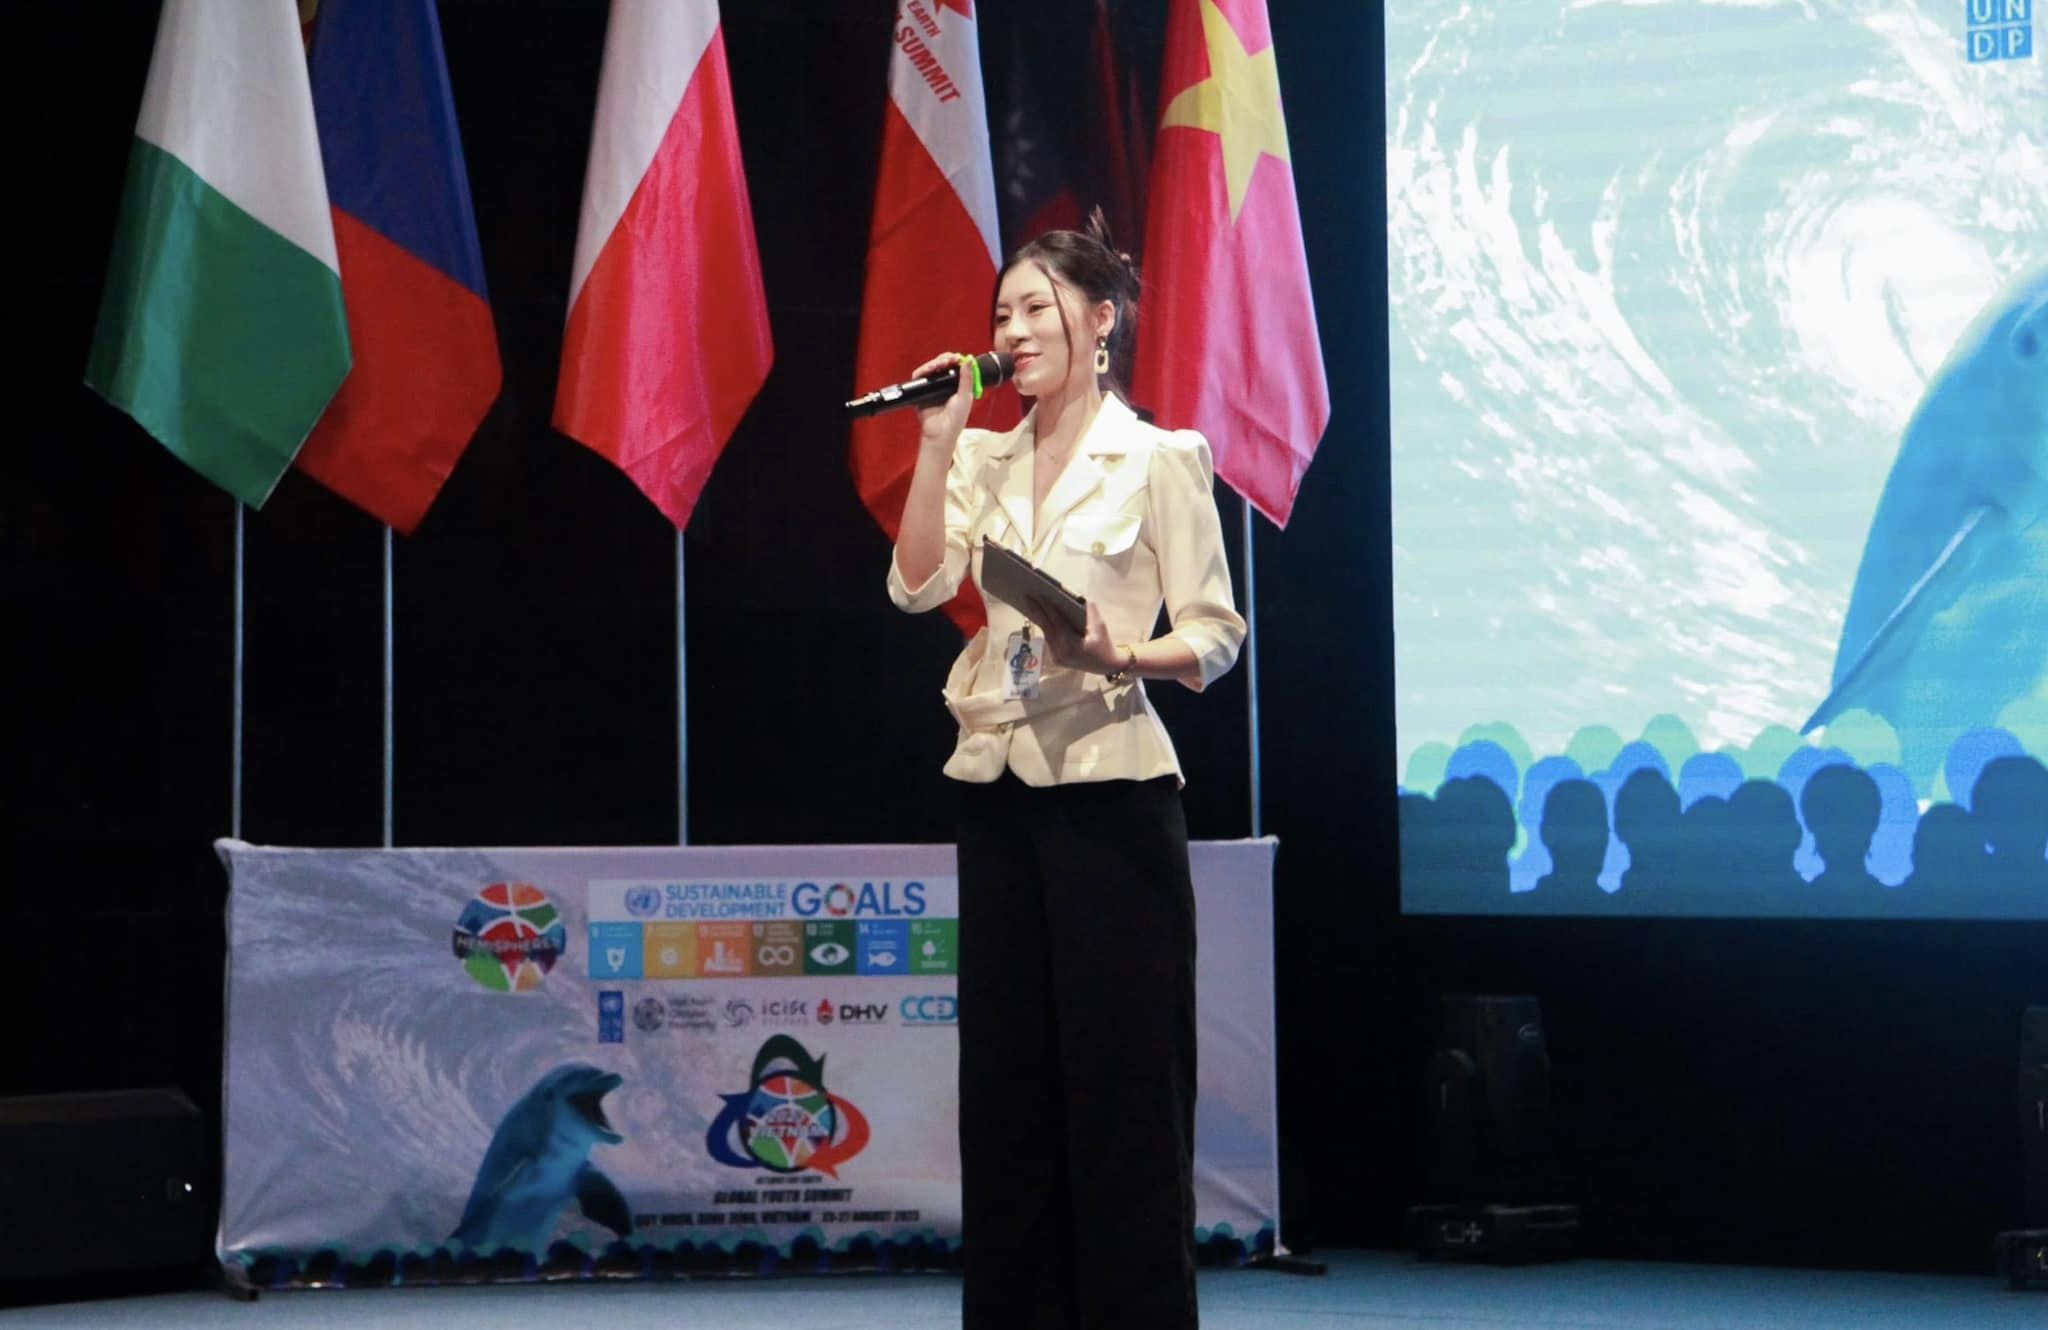 Khổng Anh dẫn chương trình cho Hội nghị thượng đỉnh thanh niên toàn cầu về Môi trường GYS 2023 tại Quy Nhơn